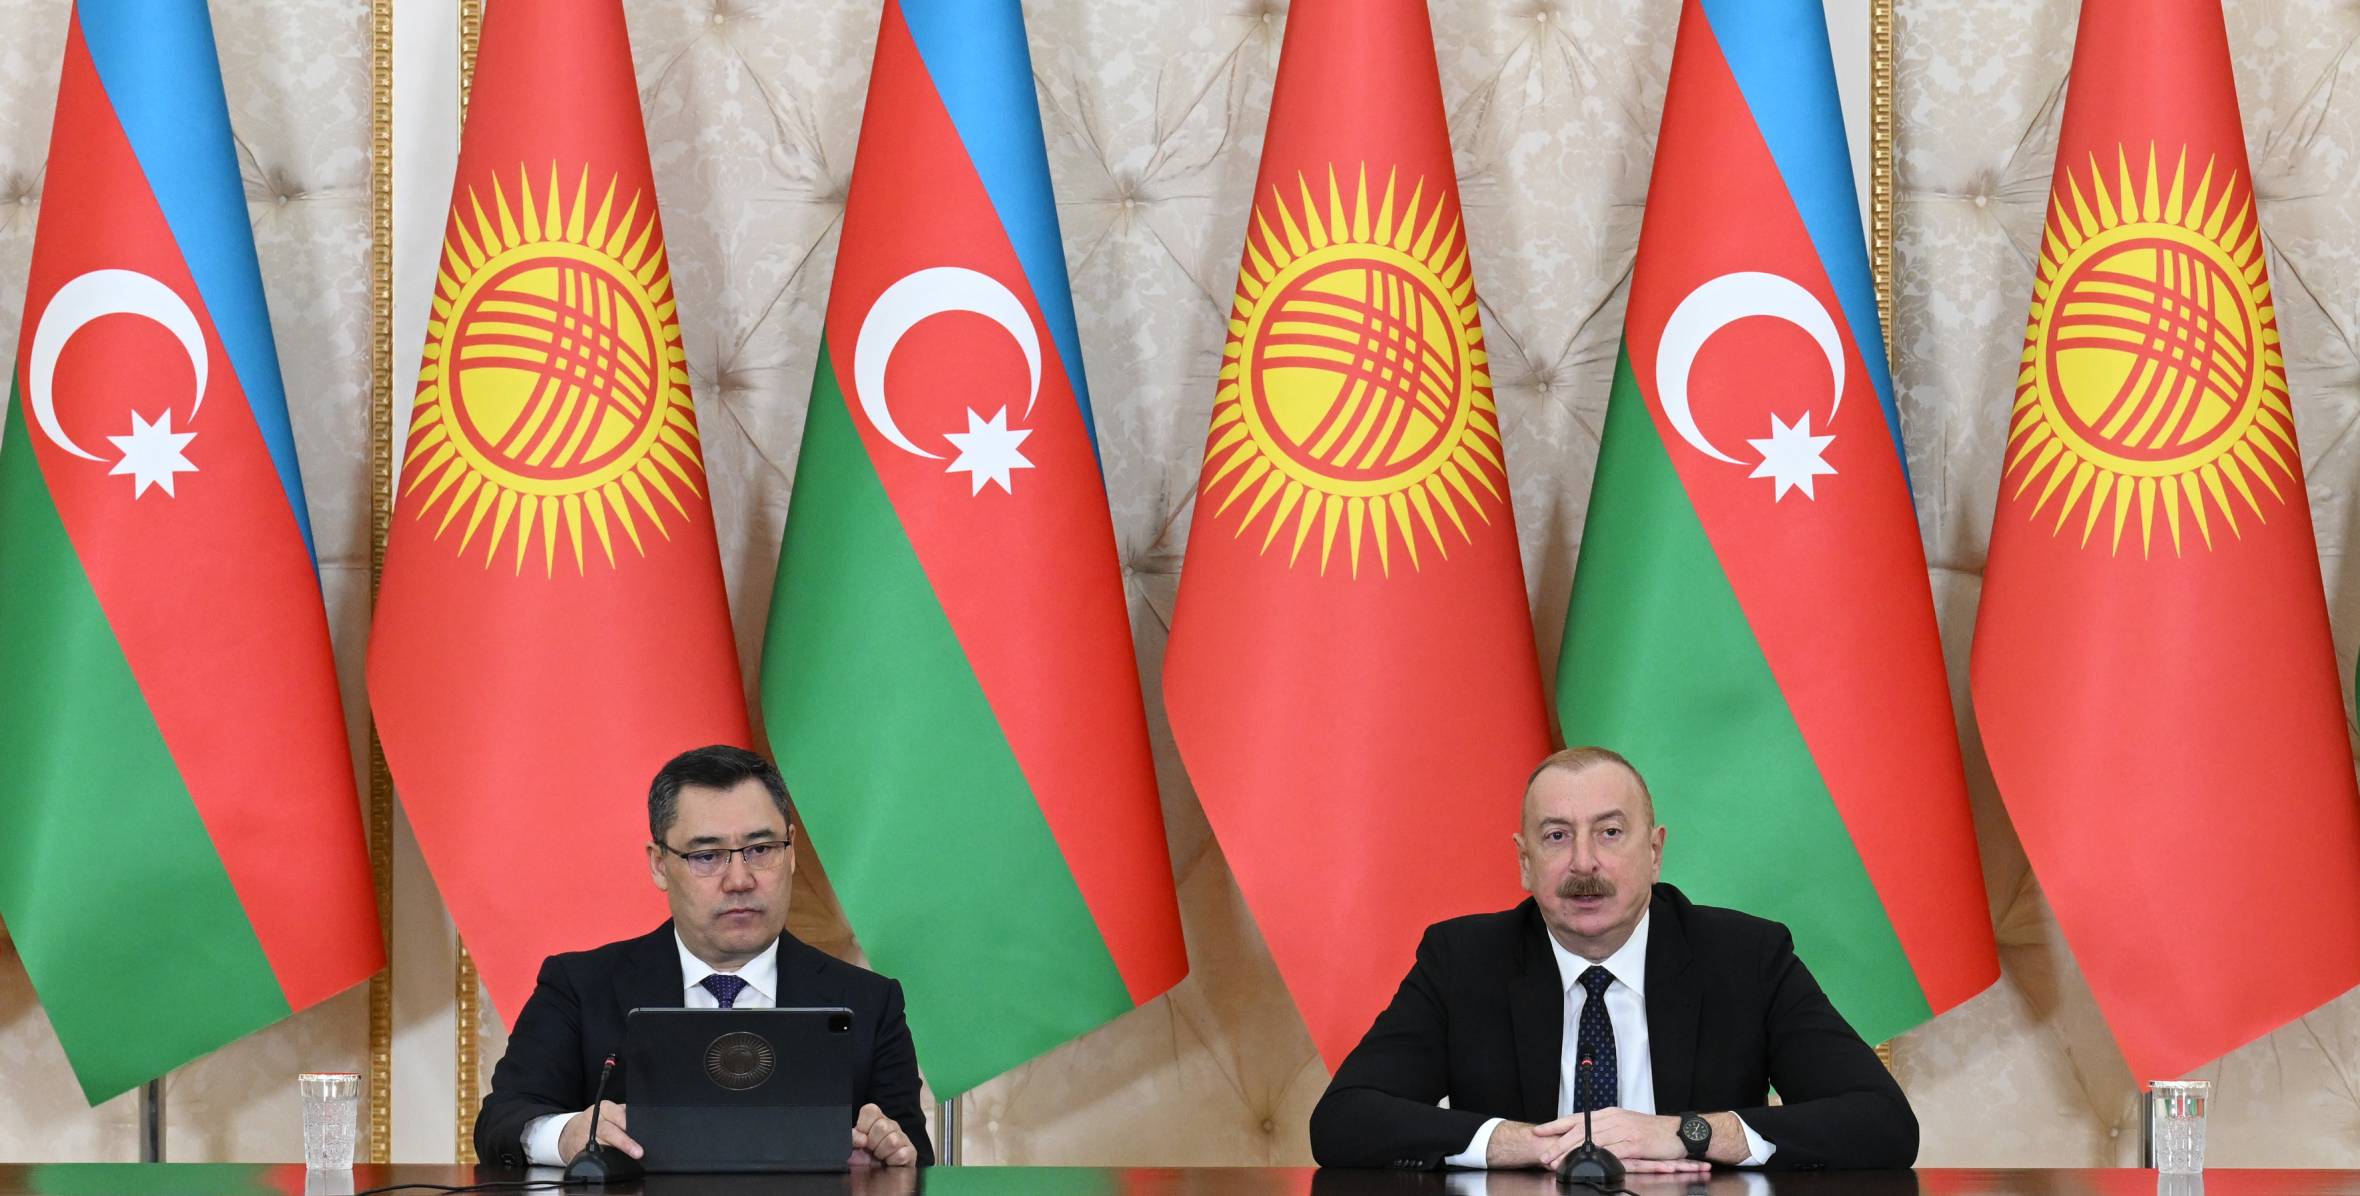 Ильхам Алиев и Президент Садыр Жапаров выступили с заявлениями для прессы